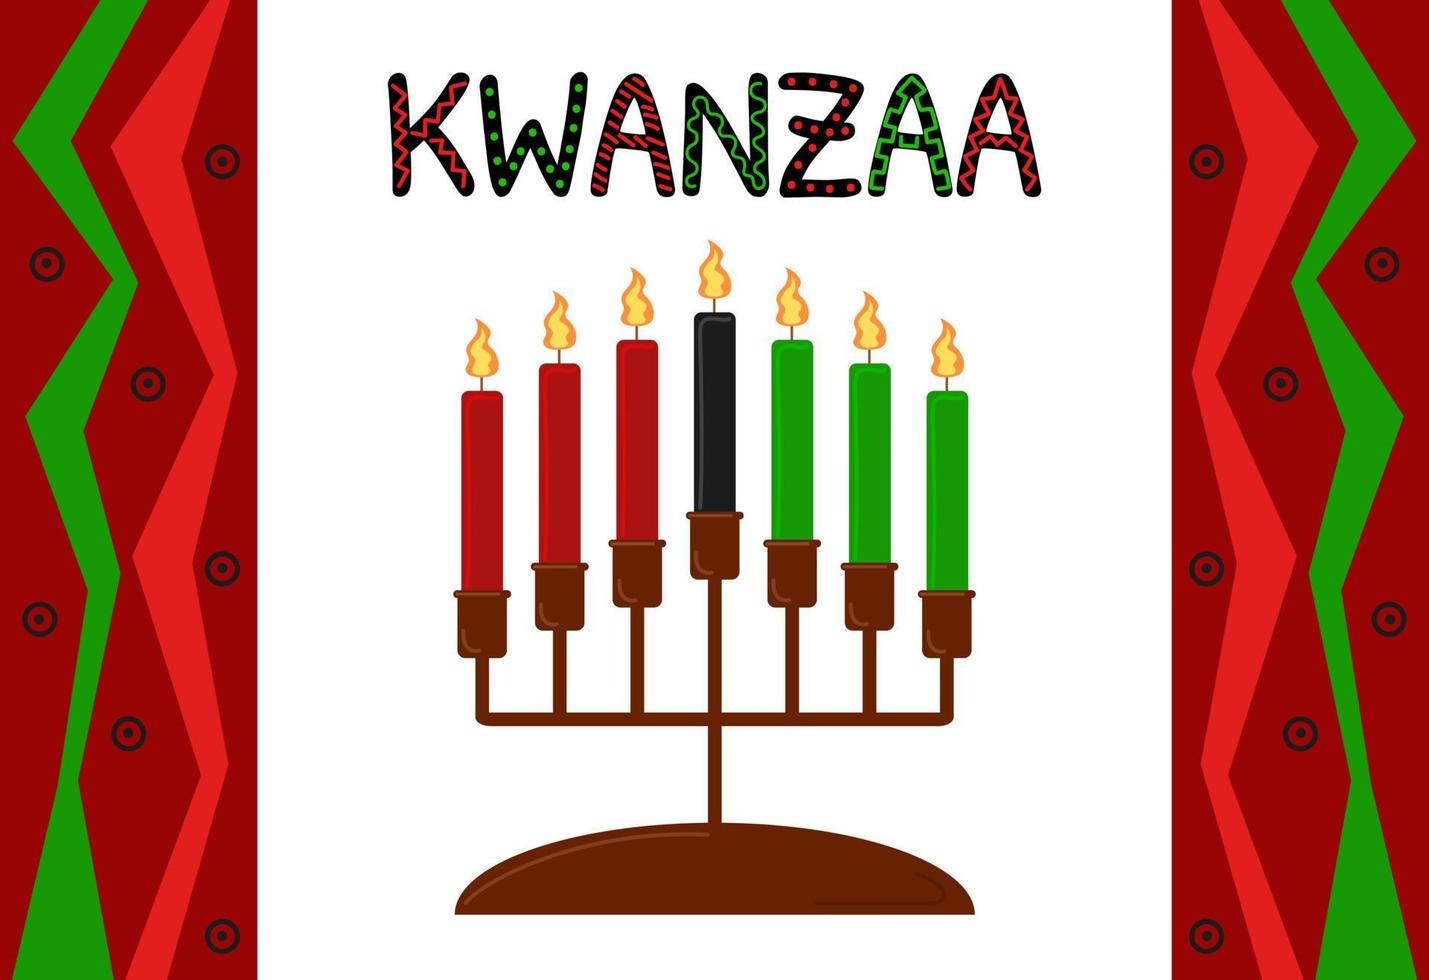 feriado kwanzaa. sete velas no castiçal. símbolo kwanzaa isolado. decoração de ornamento africano. ilustração em vetor pôster